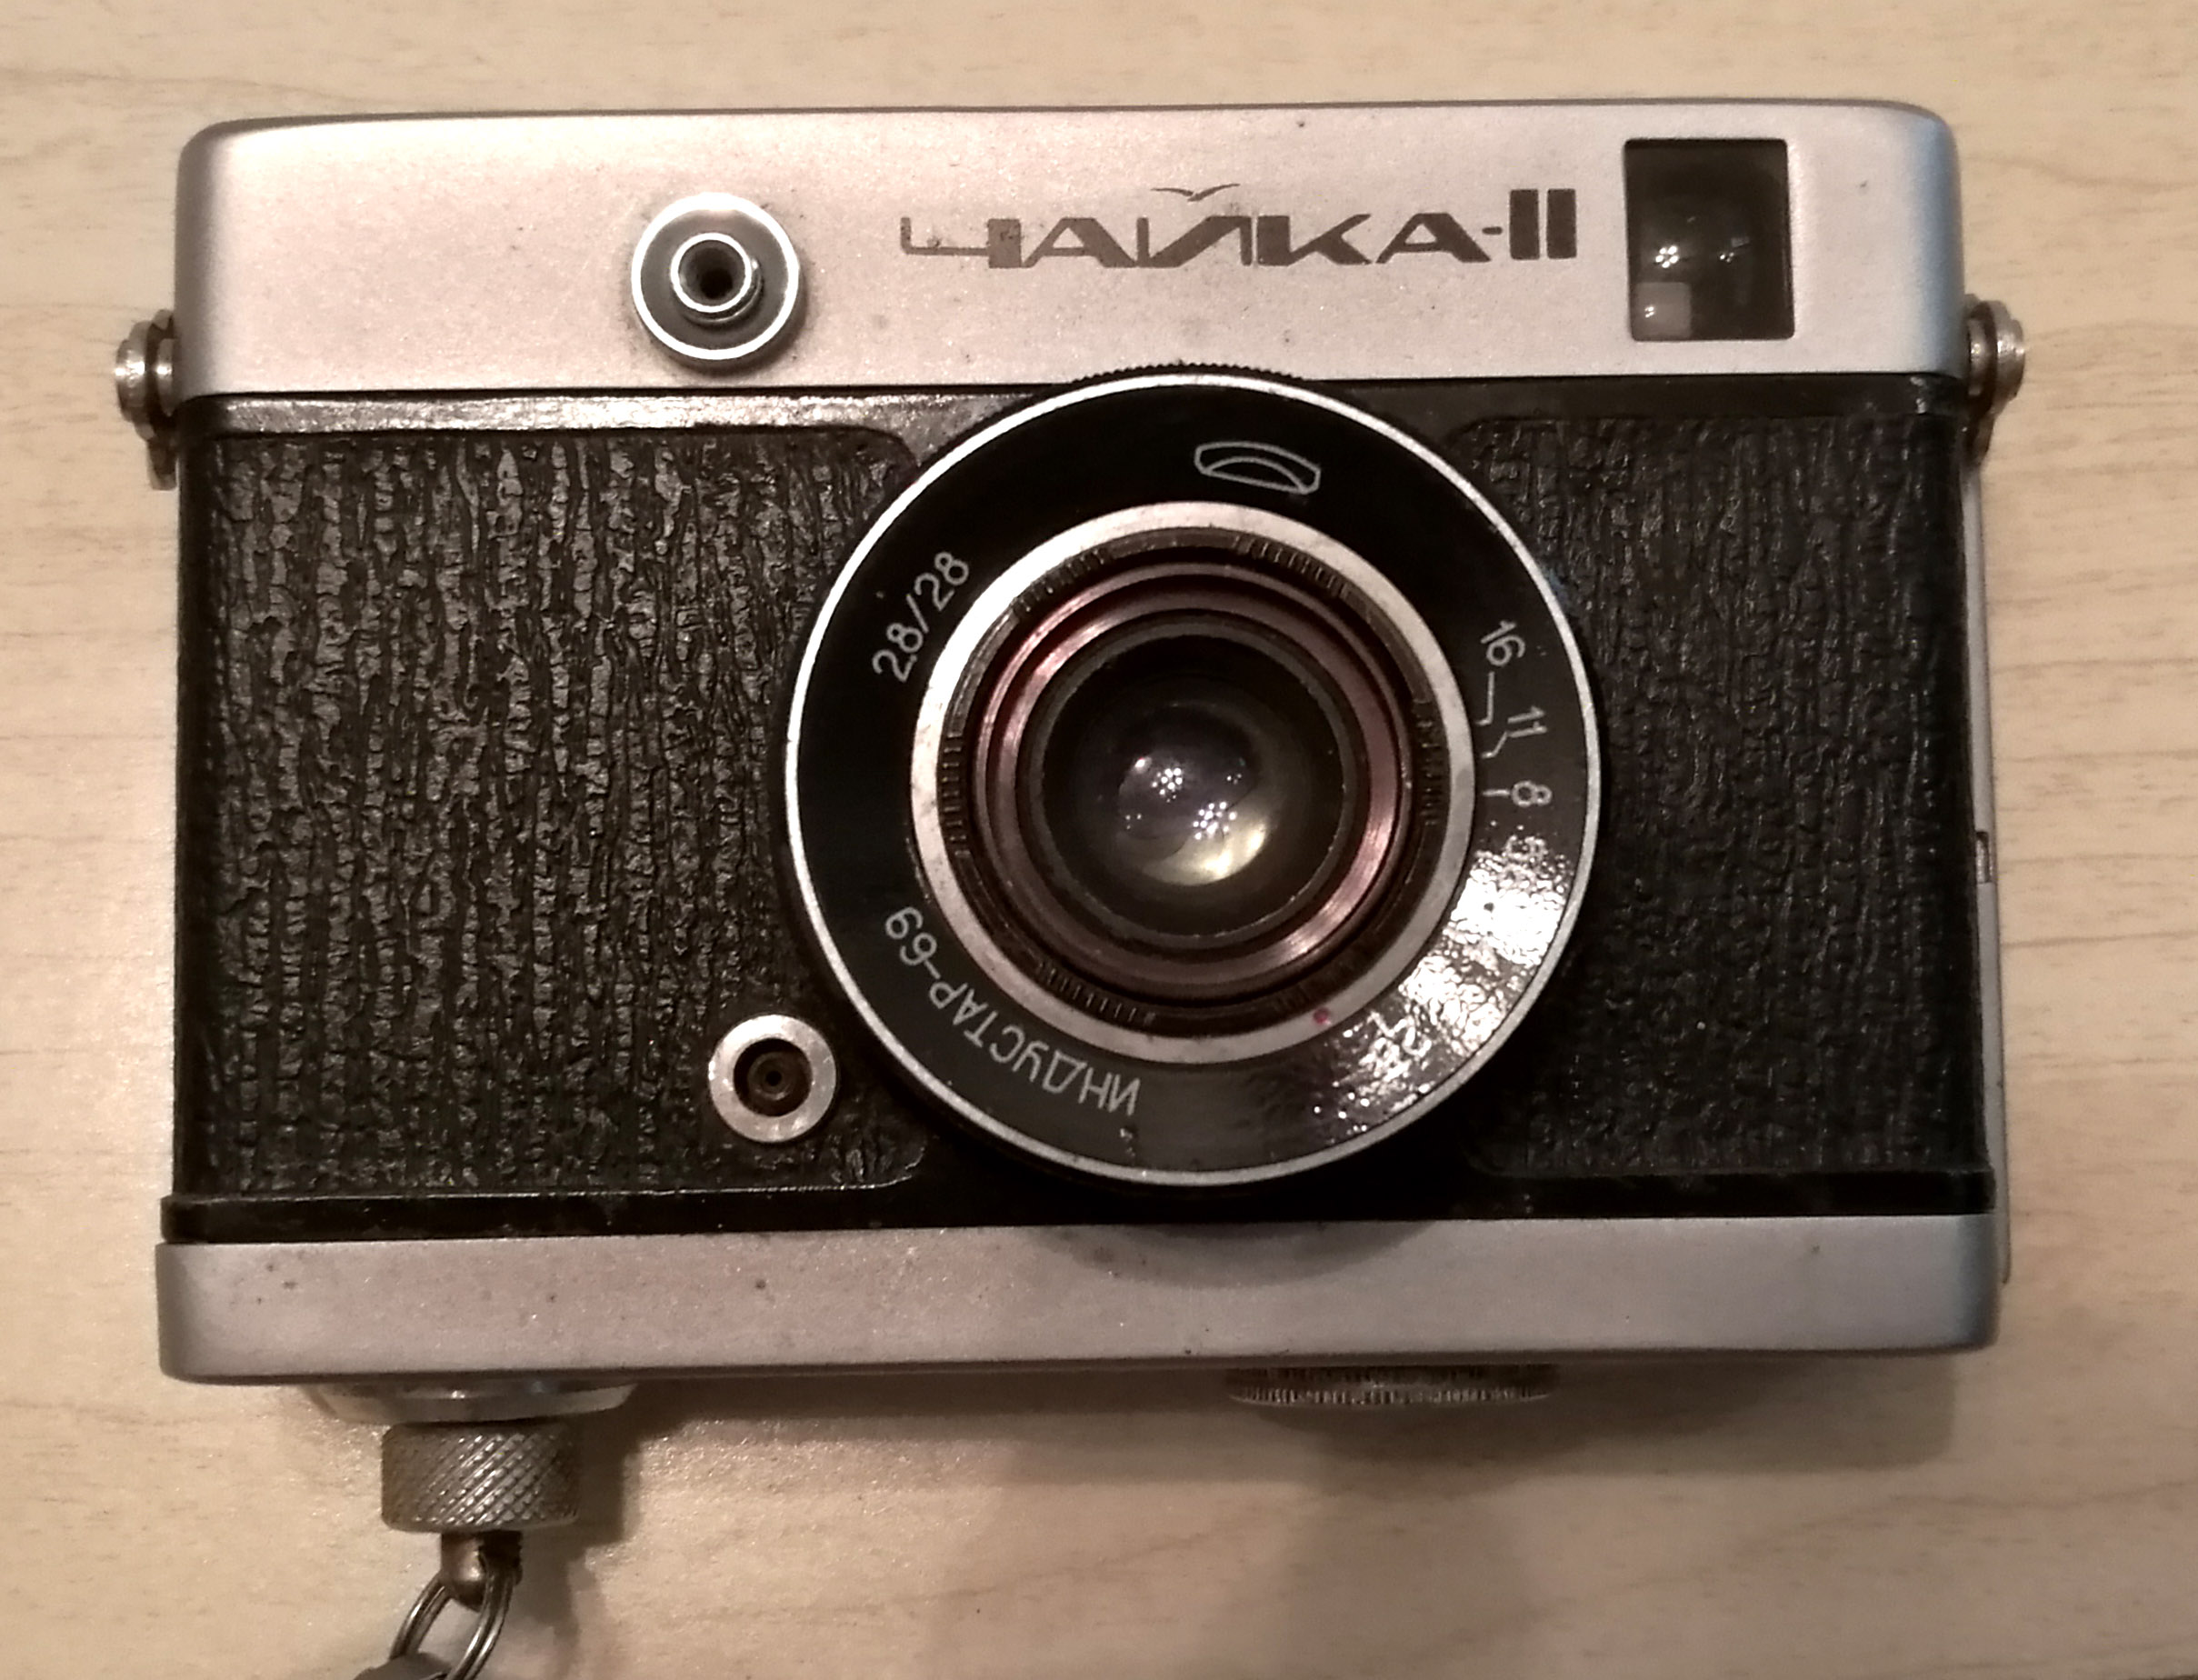 收藏佳品-恰一卡II,俄罗斯恰伊卡，72张金属半幅相机 数码相机/单反相机/摄像机 收藏相机 原图主图